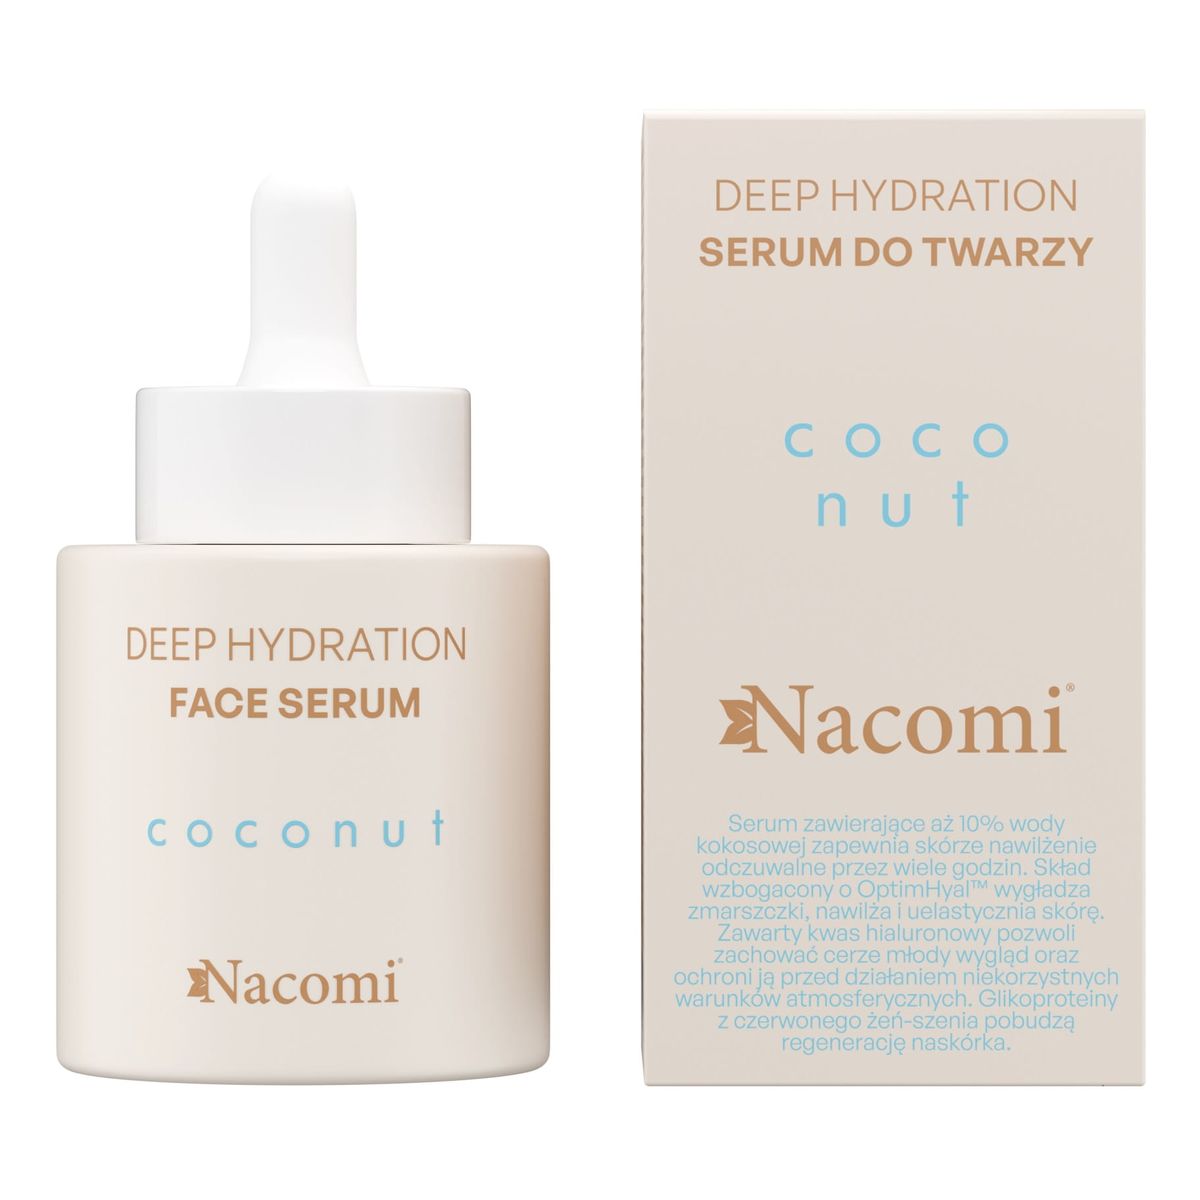 Nacomi Deep hydration Coconut Krem do twarzy + Serum